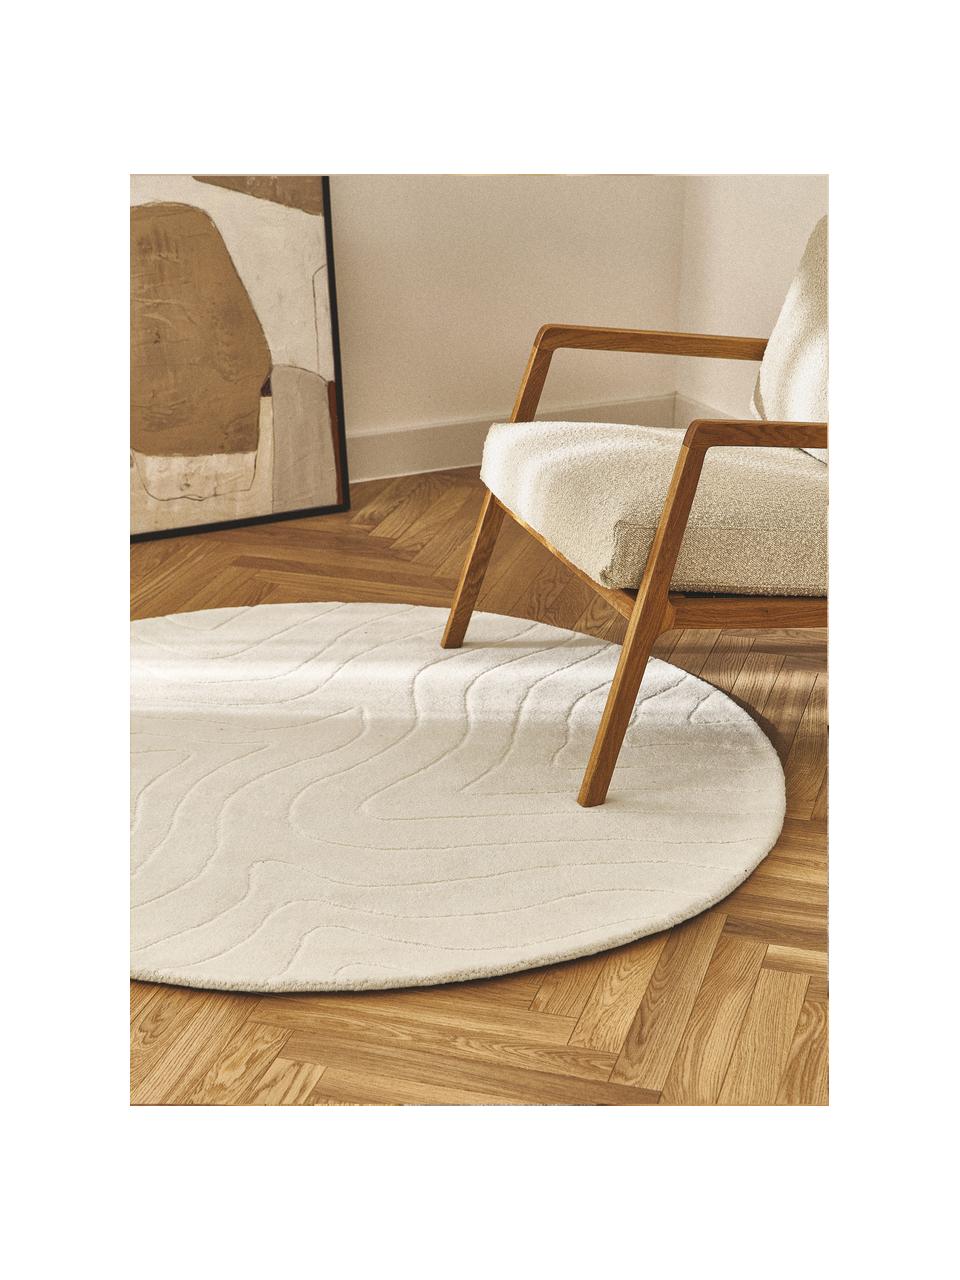 Kulatý ručně všívaný vlněný koberec Aaron, Krémově bílá, Ø 150 cm (velikost M)